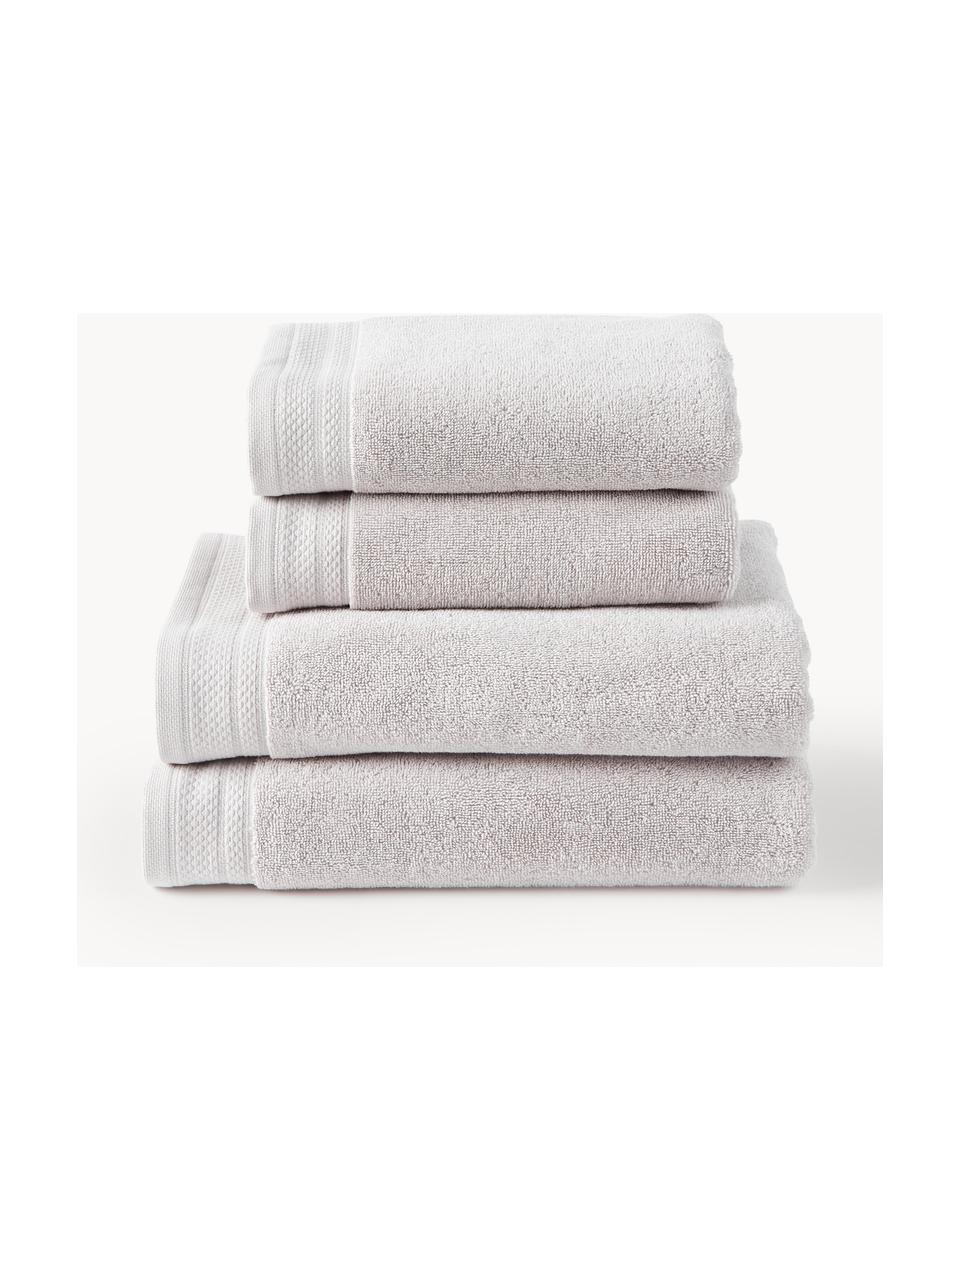 Súprava uterákov z organickej bavlny Premium, rôzne veľkosti, Svetlosivá, 3-dielna súprava (uterák pre hostí, uterák na ruky, osuška)